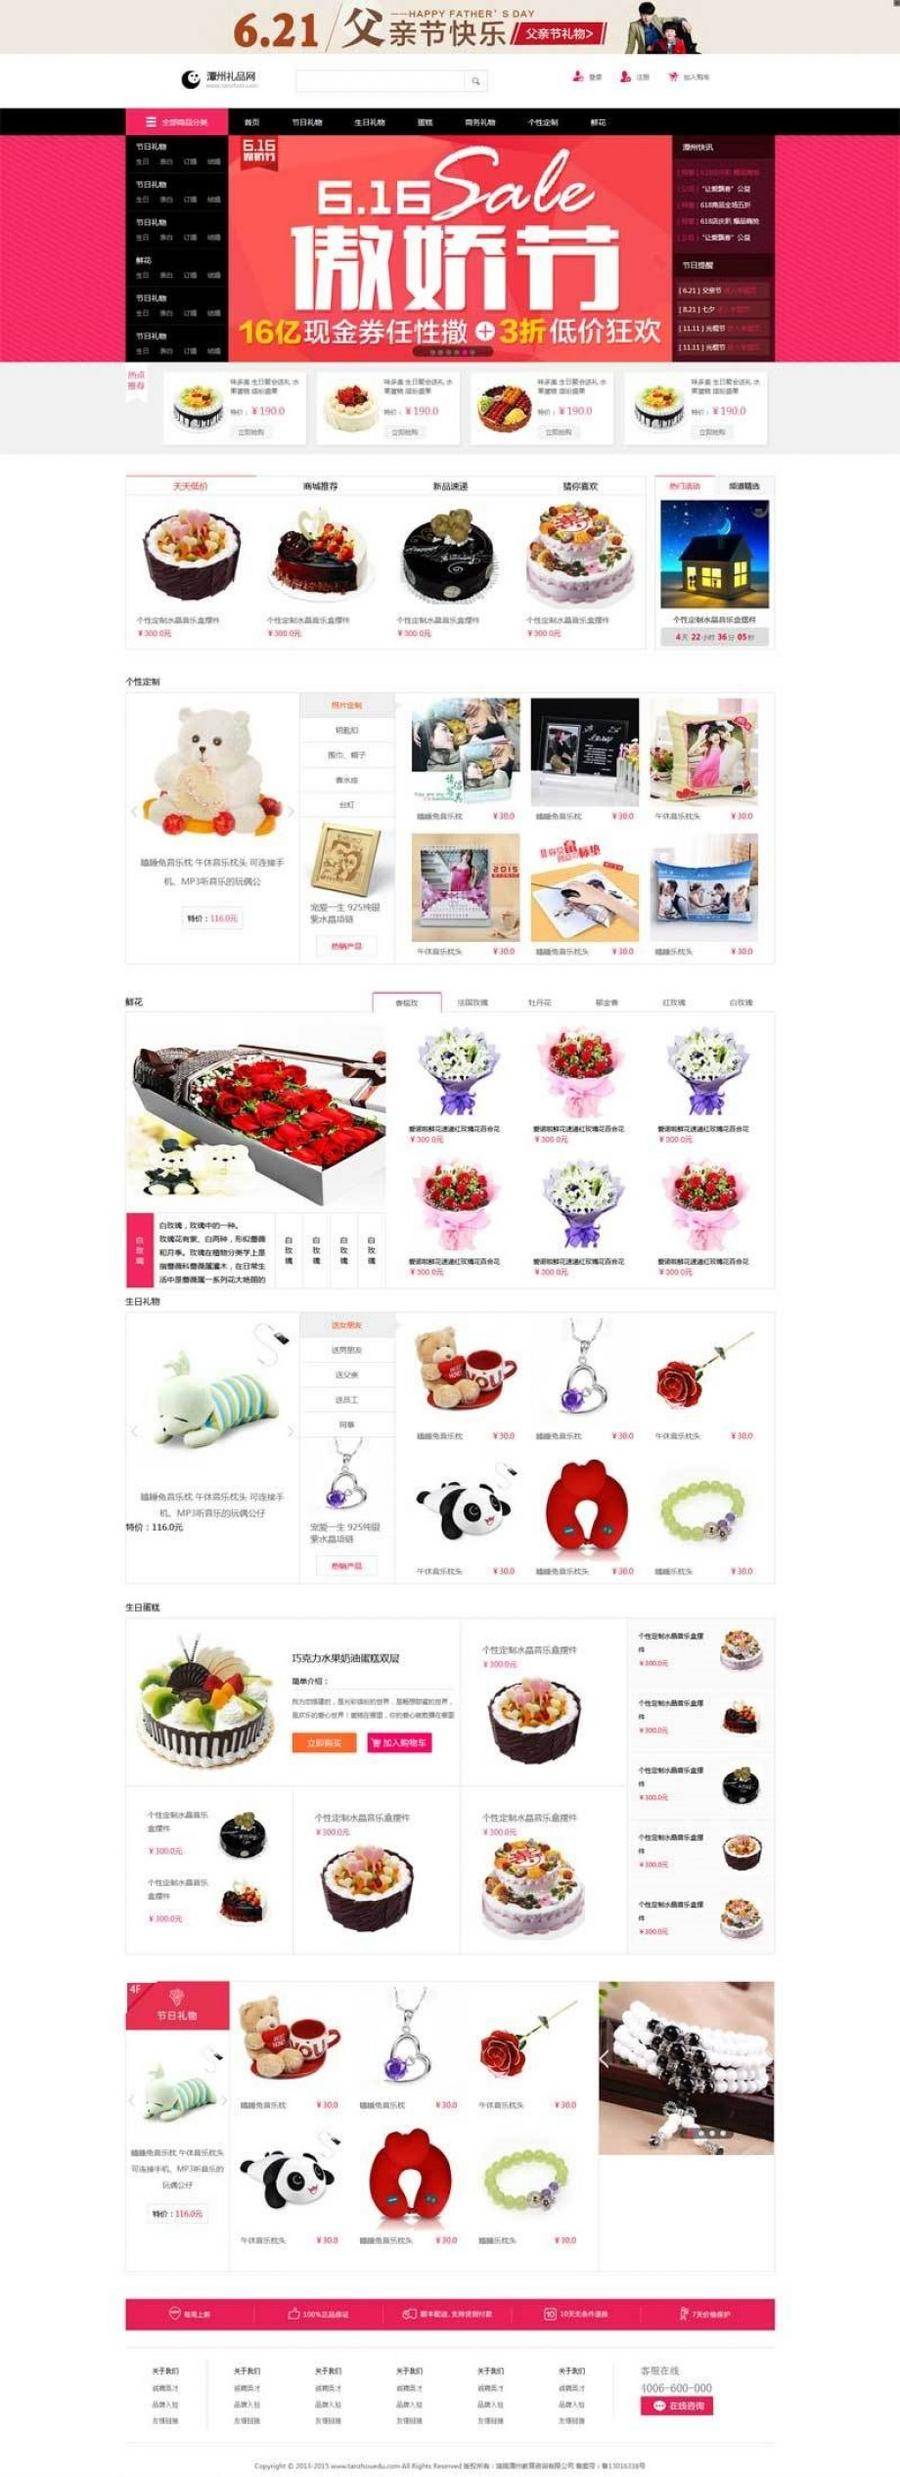 红色主题节日礼品购物商城网站html模板封面图